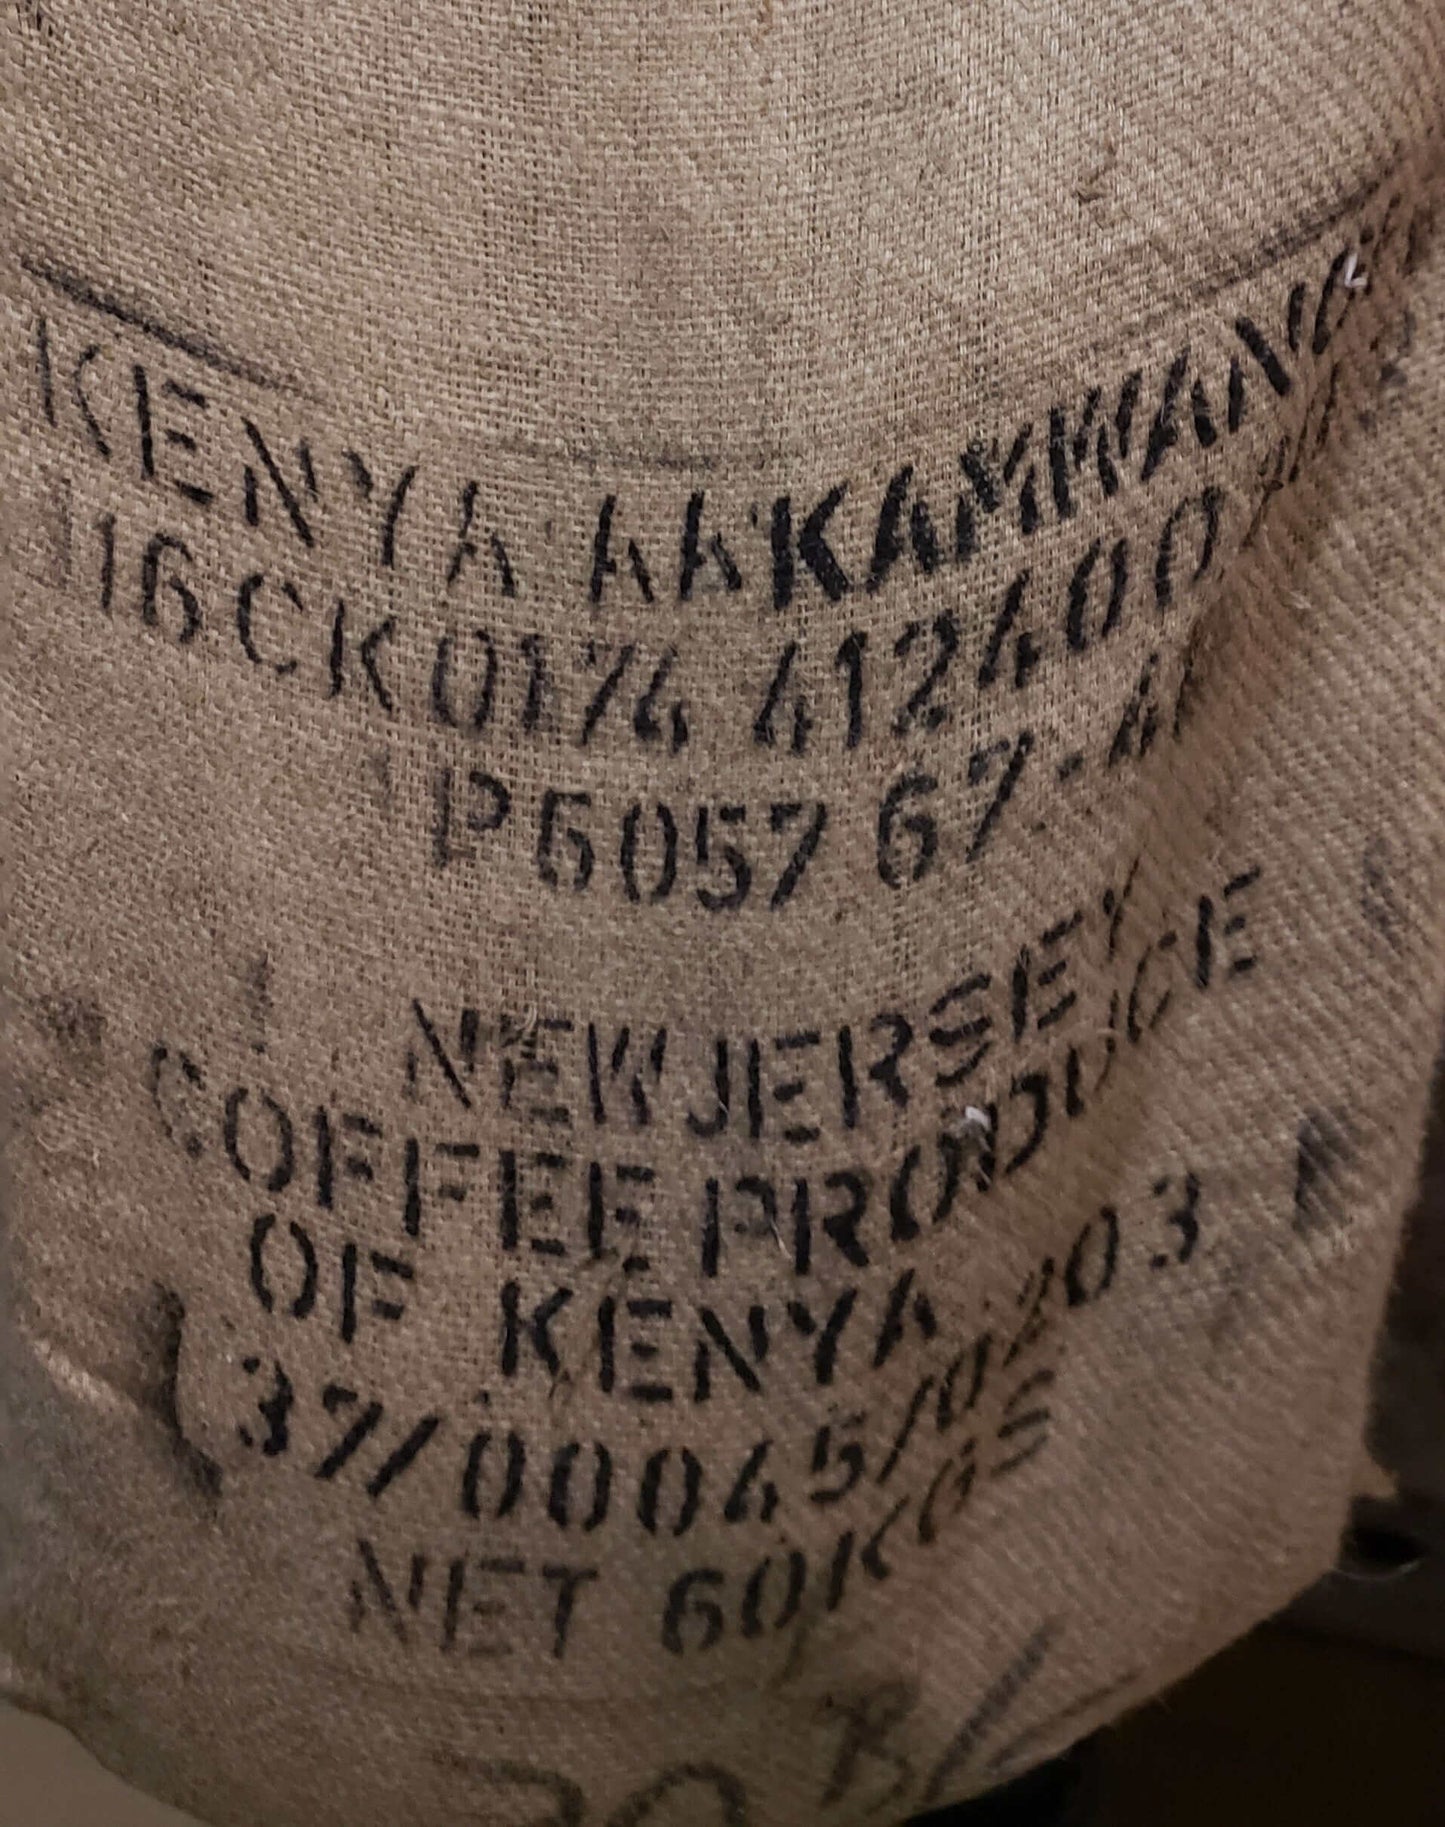 Kenya Kainamui